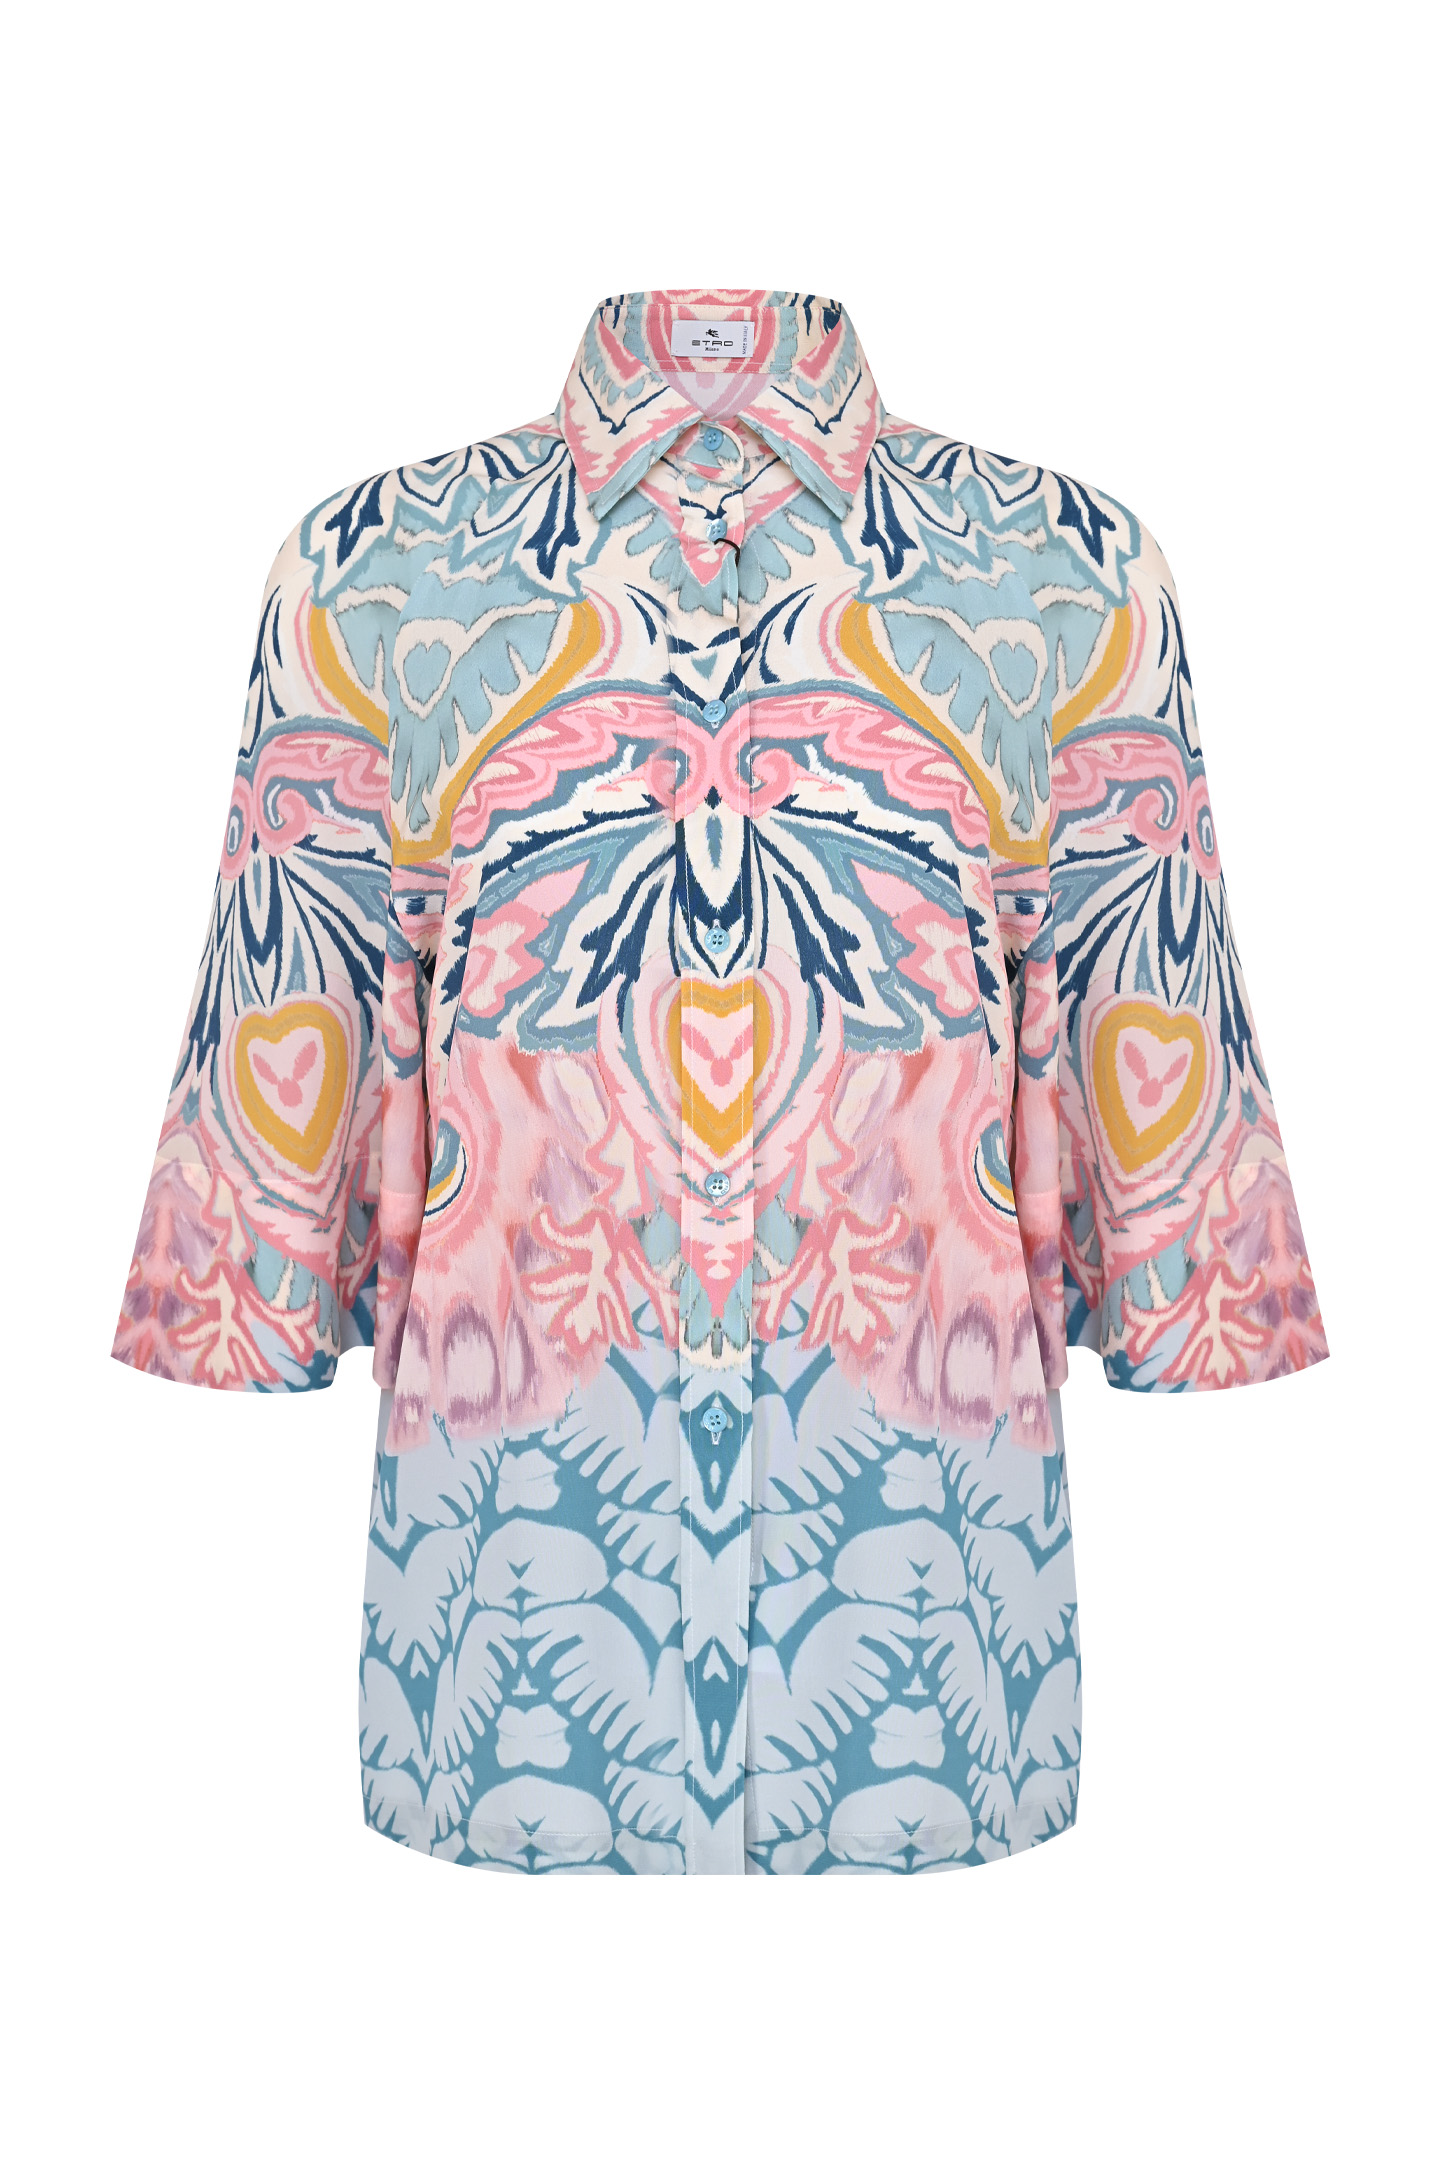 Блуза ETRO 12392 4492, цвет: Разноцветный, Женский